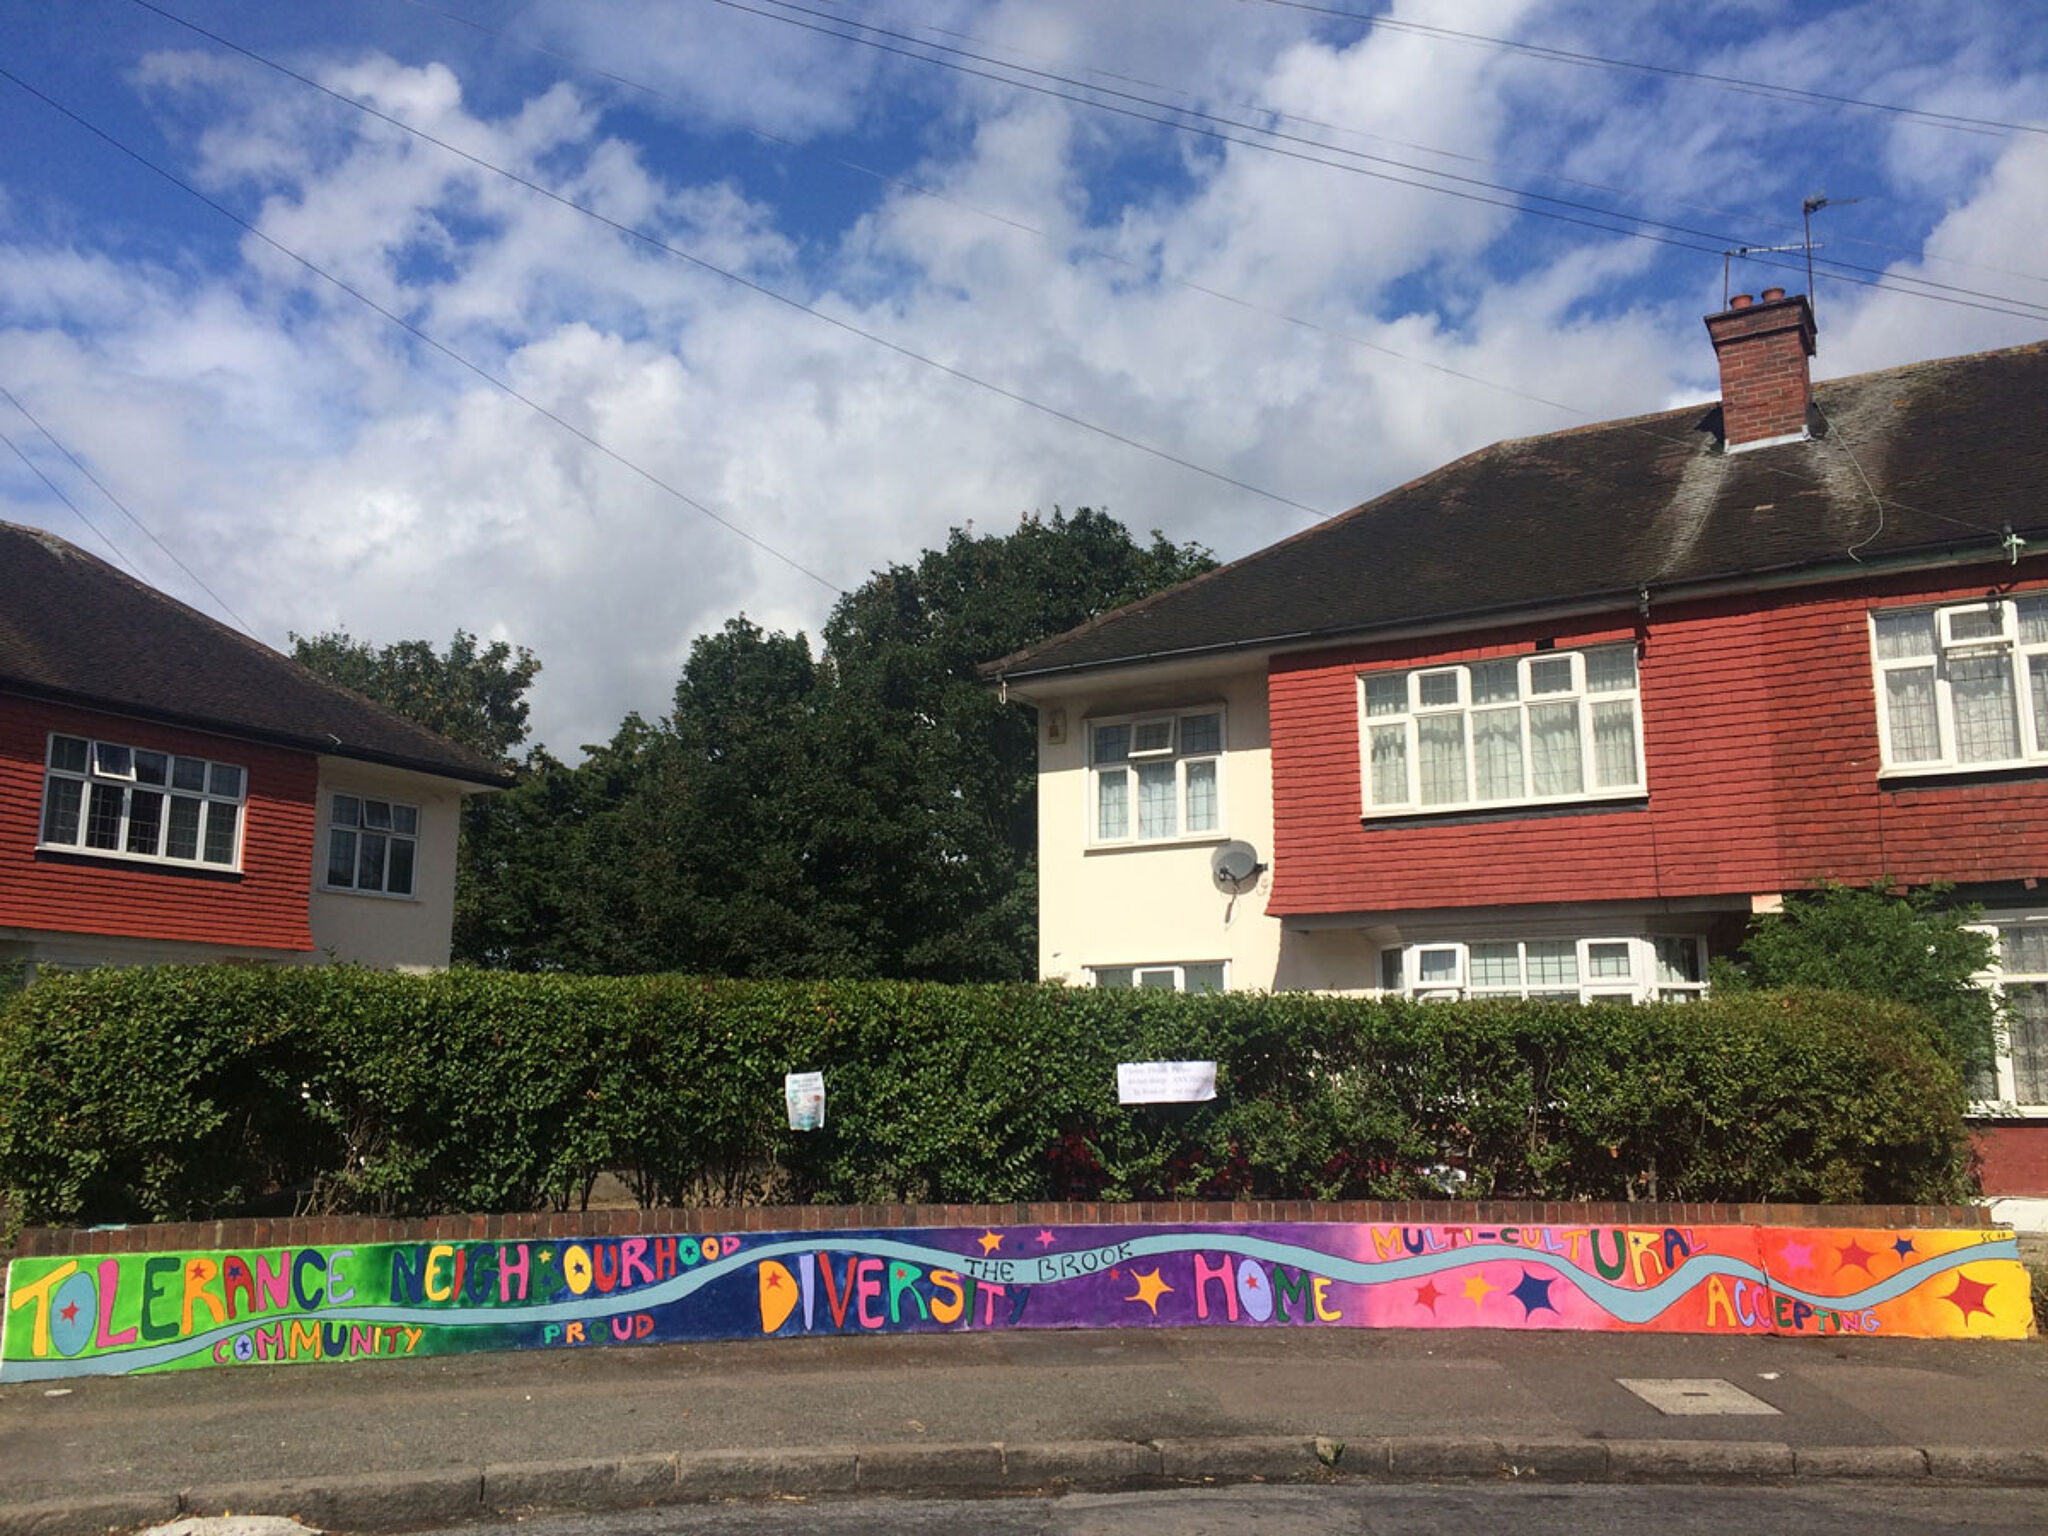 Simon Carter&mdash;Neighbourhood, Community and Home